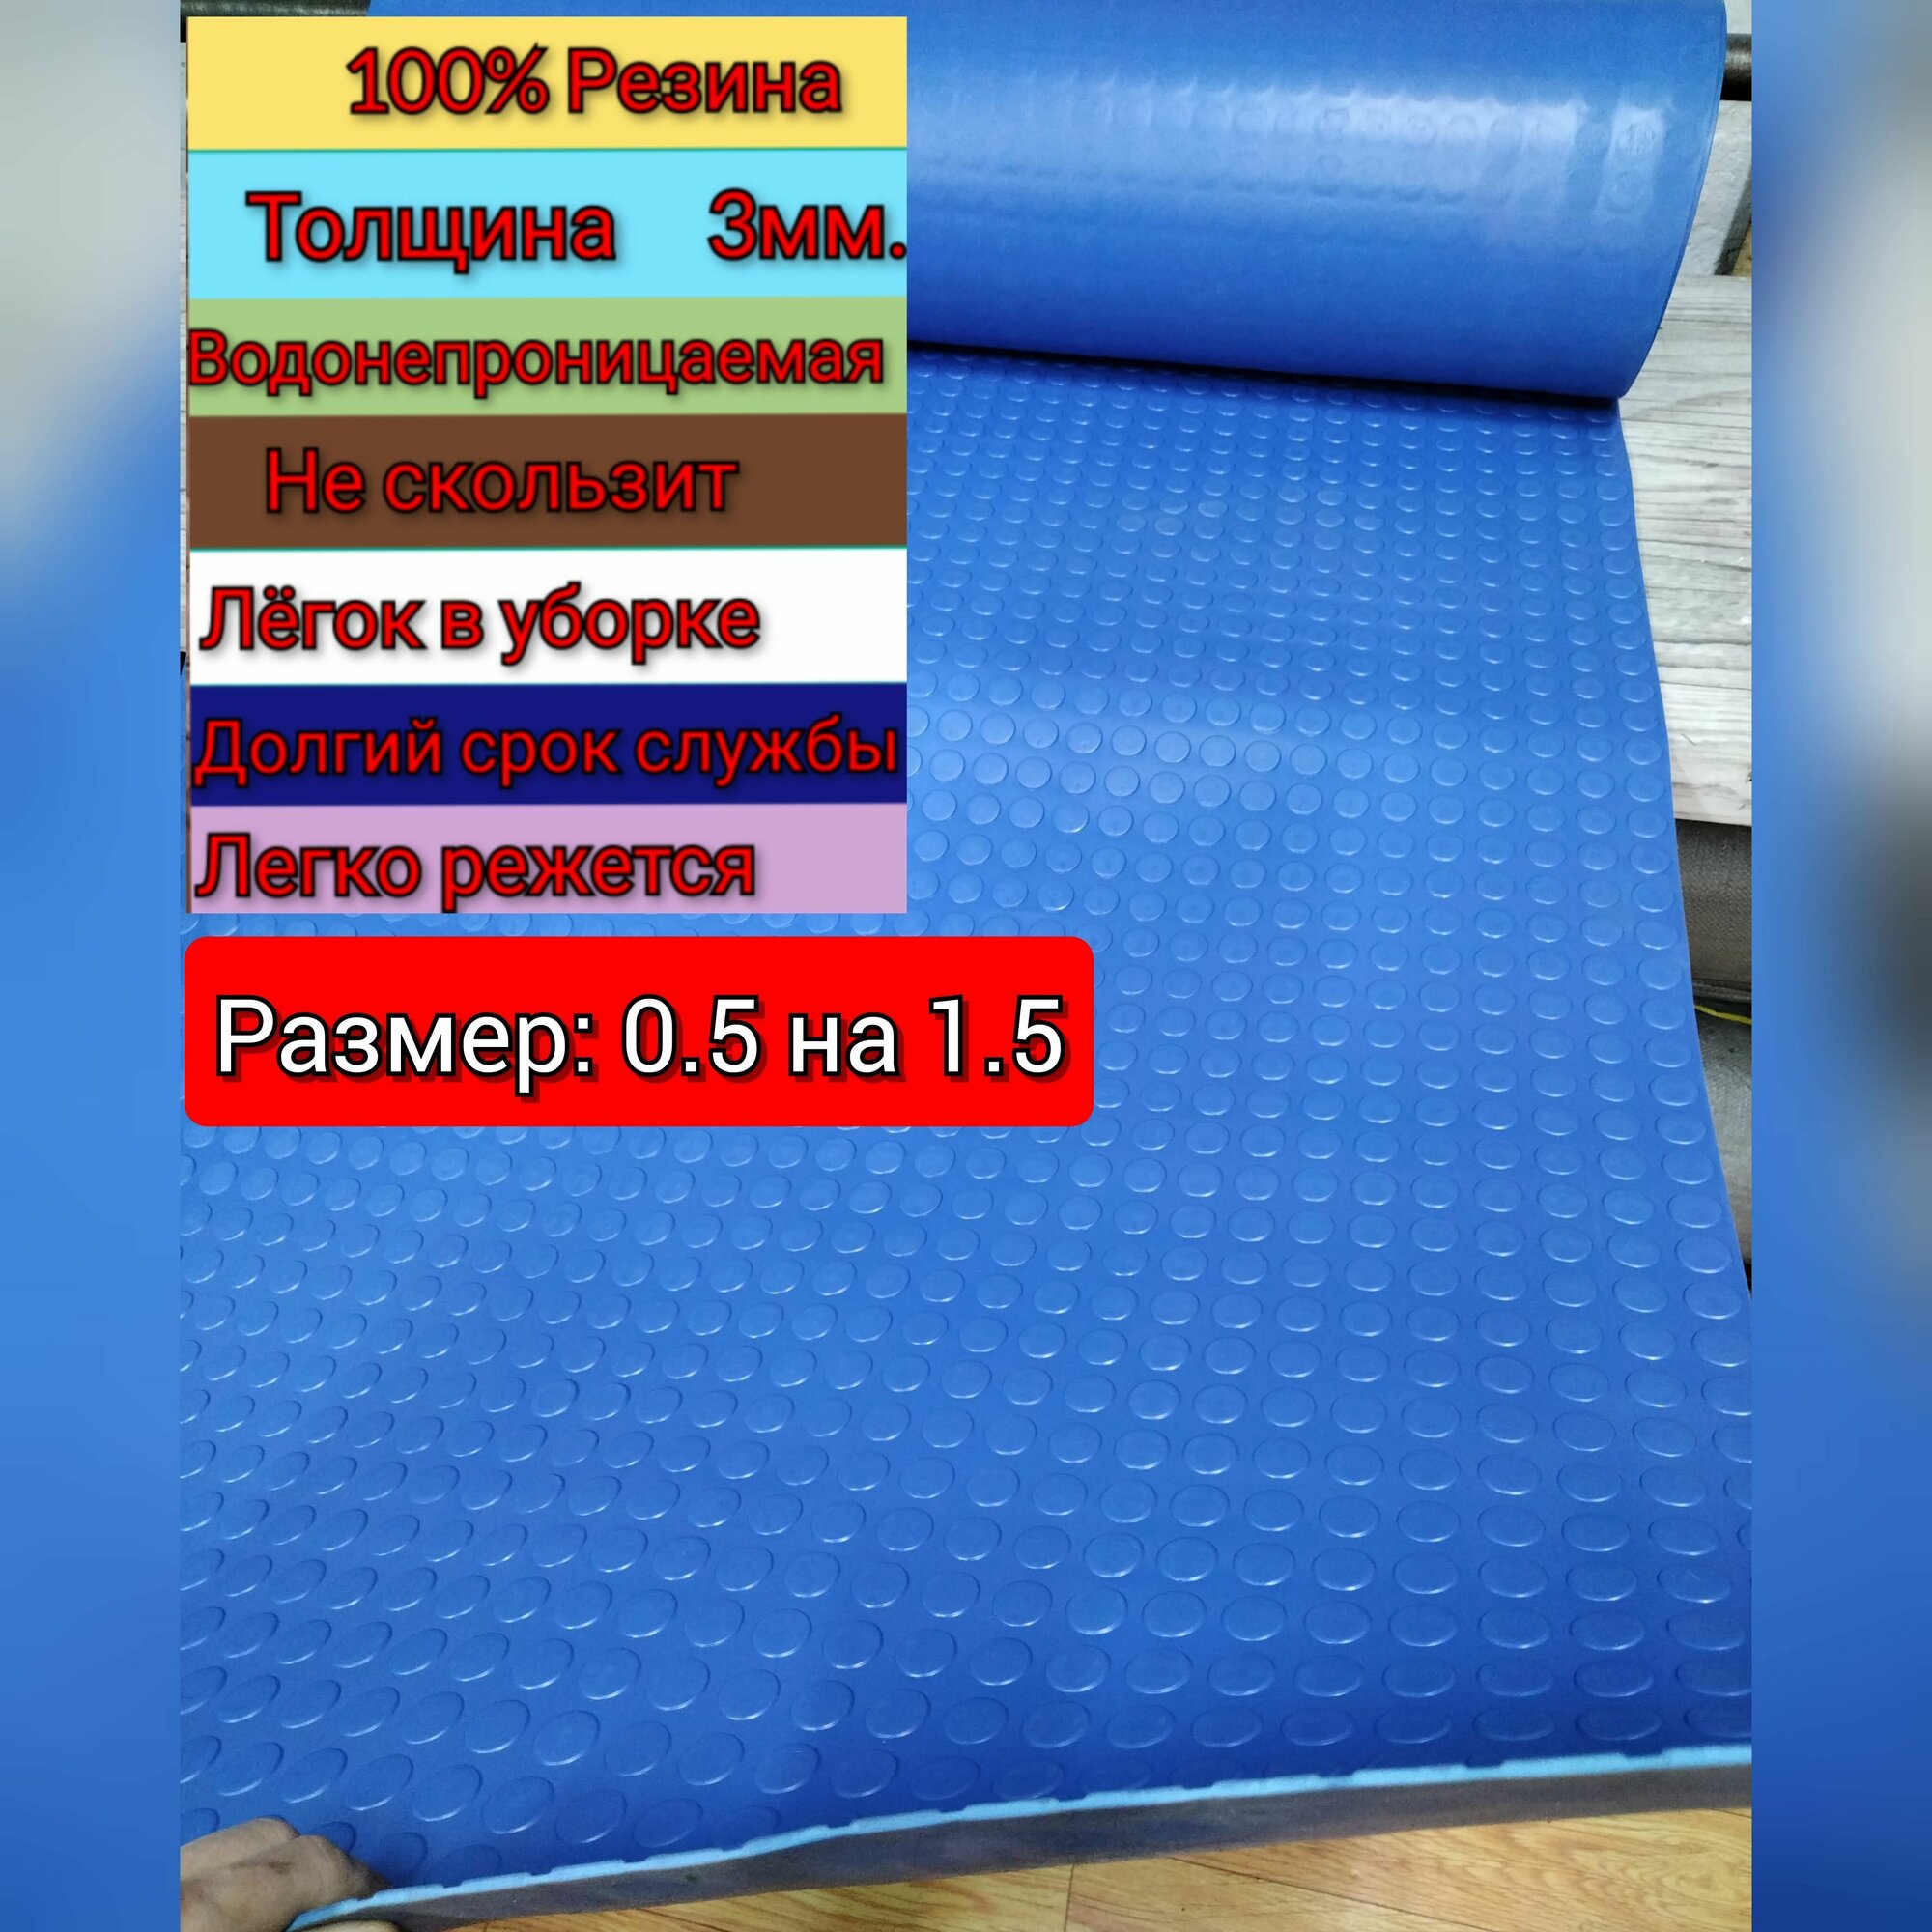 Резиновое покрытие напольное в рулоне 0.5 х 1.5 (Монета цвет синий) Резиновая дорожка для авто гаража ступень для лифта